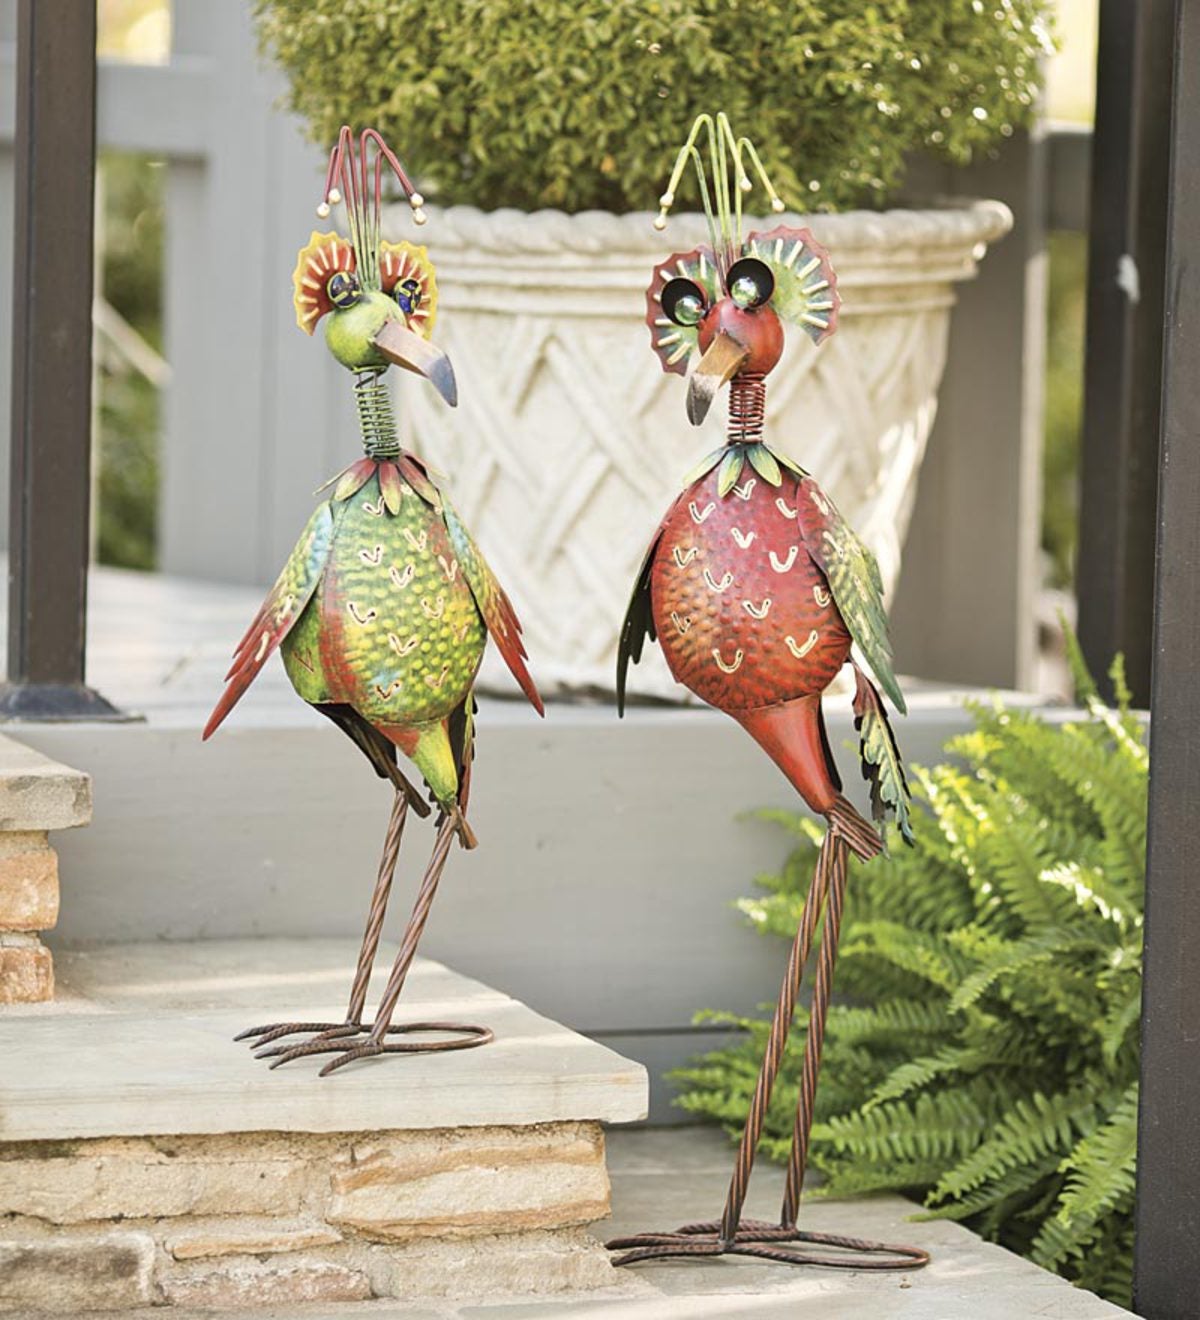 Red Bobble Head Bird Metal Garden Sculpture Wind and Weather